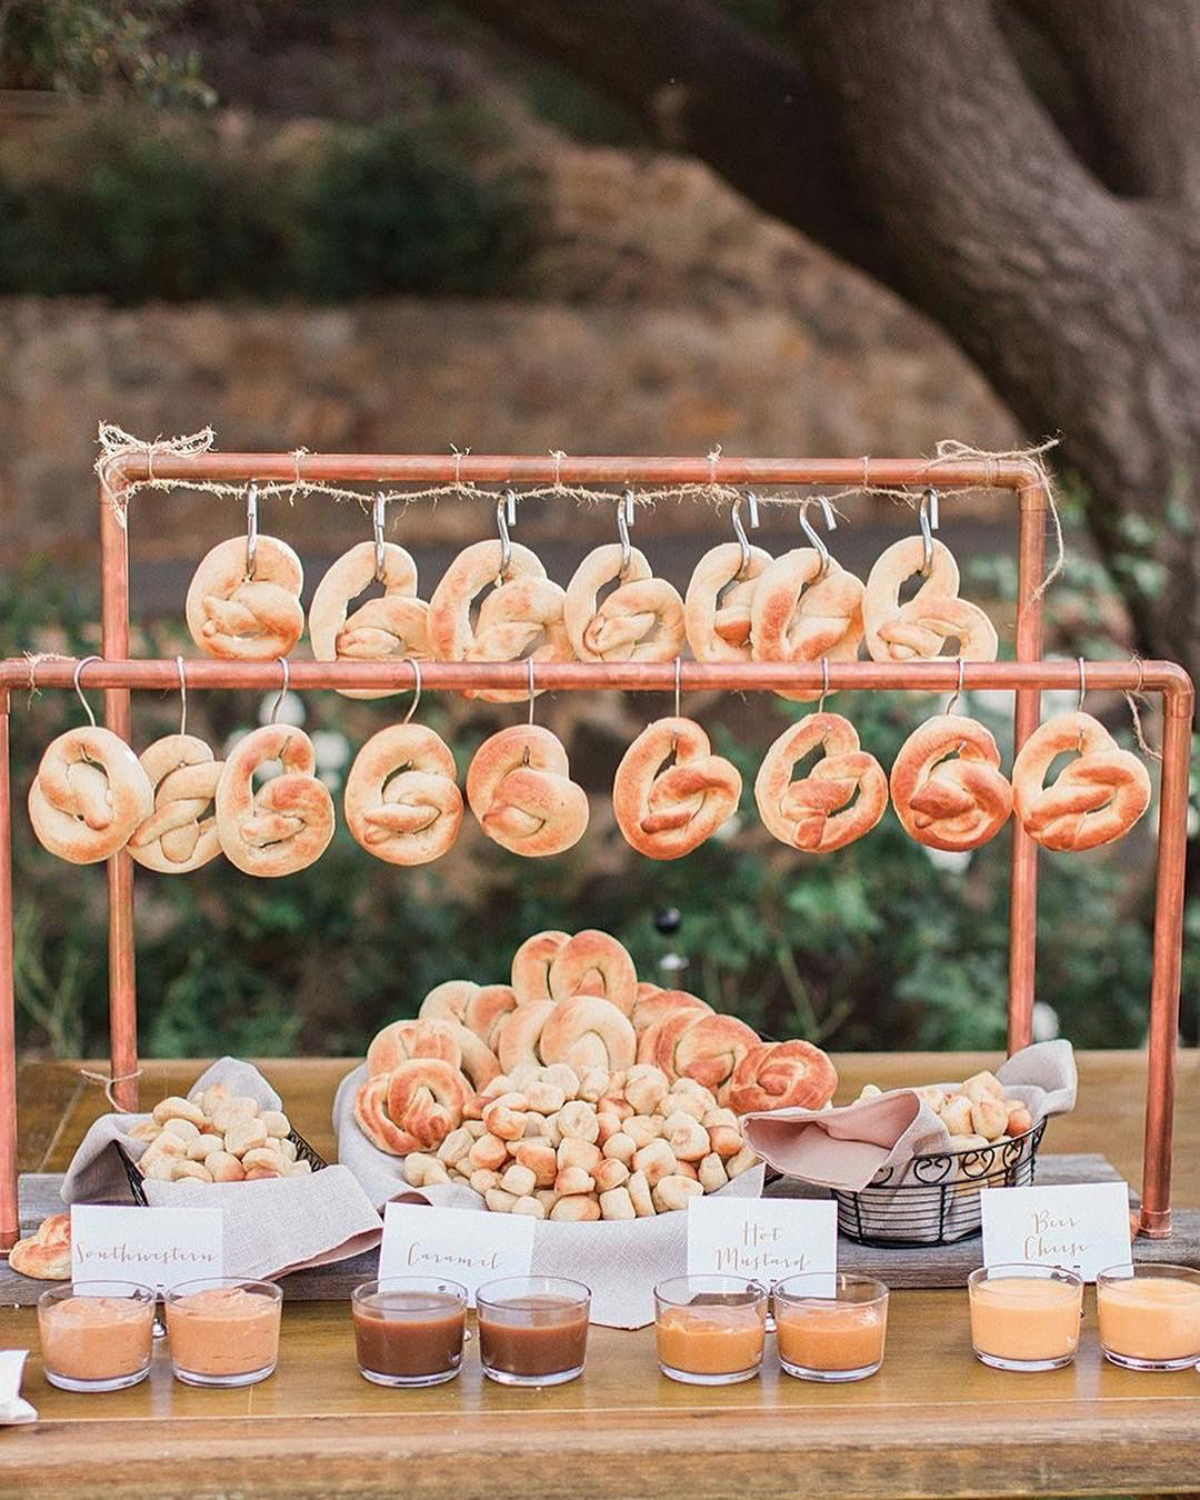 pretzel bar at wedding